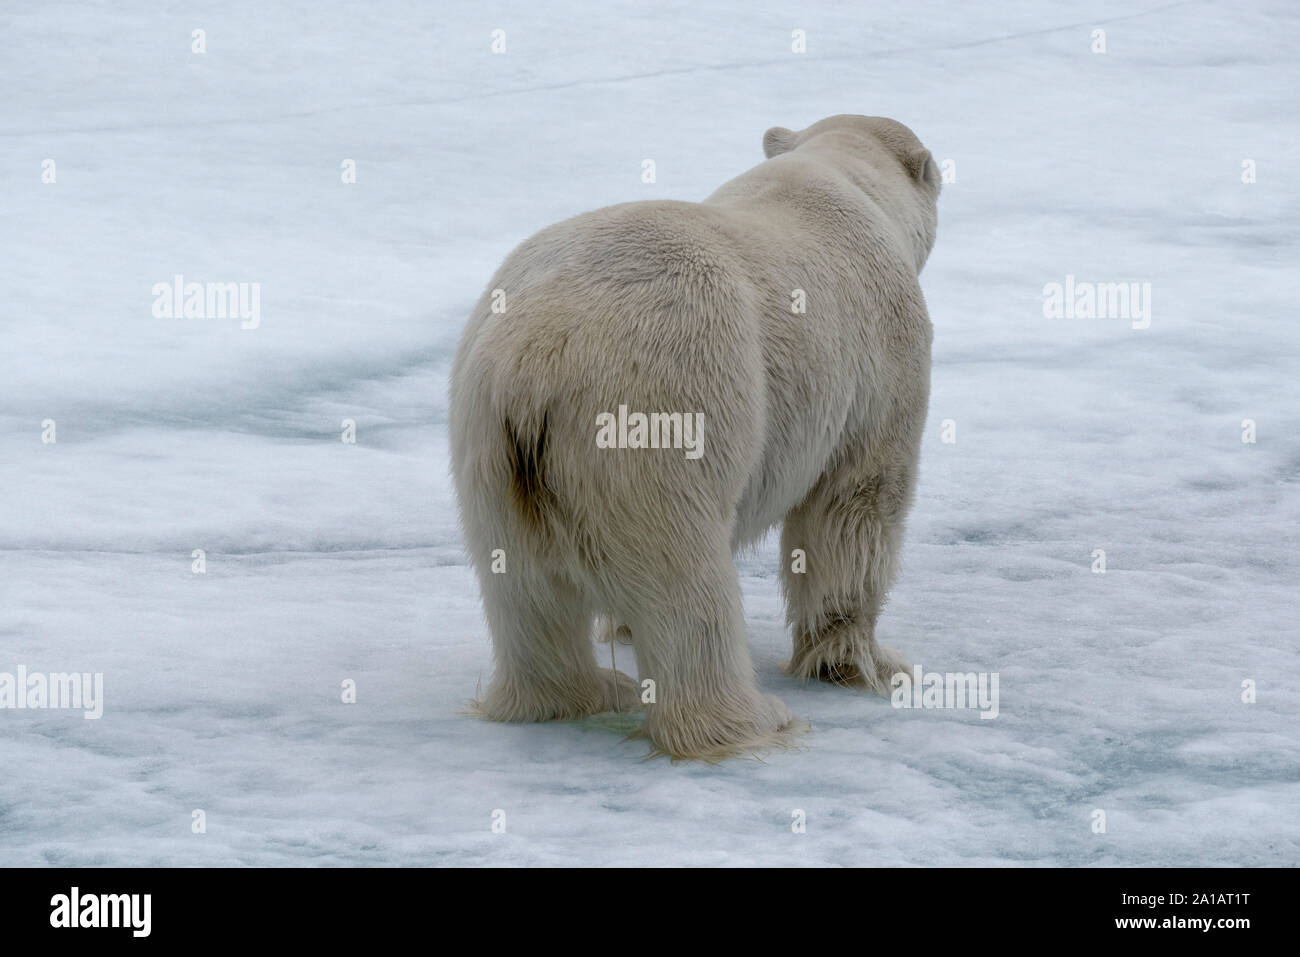 Eisbär (Ursus maritimus) steht auf Eisscholle, Rückansicht, nördliche Packeisgrenze, Svalbard, Norwegen. Orso polare sulla banchisa, Svalbard, Norvegia Foto Stock